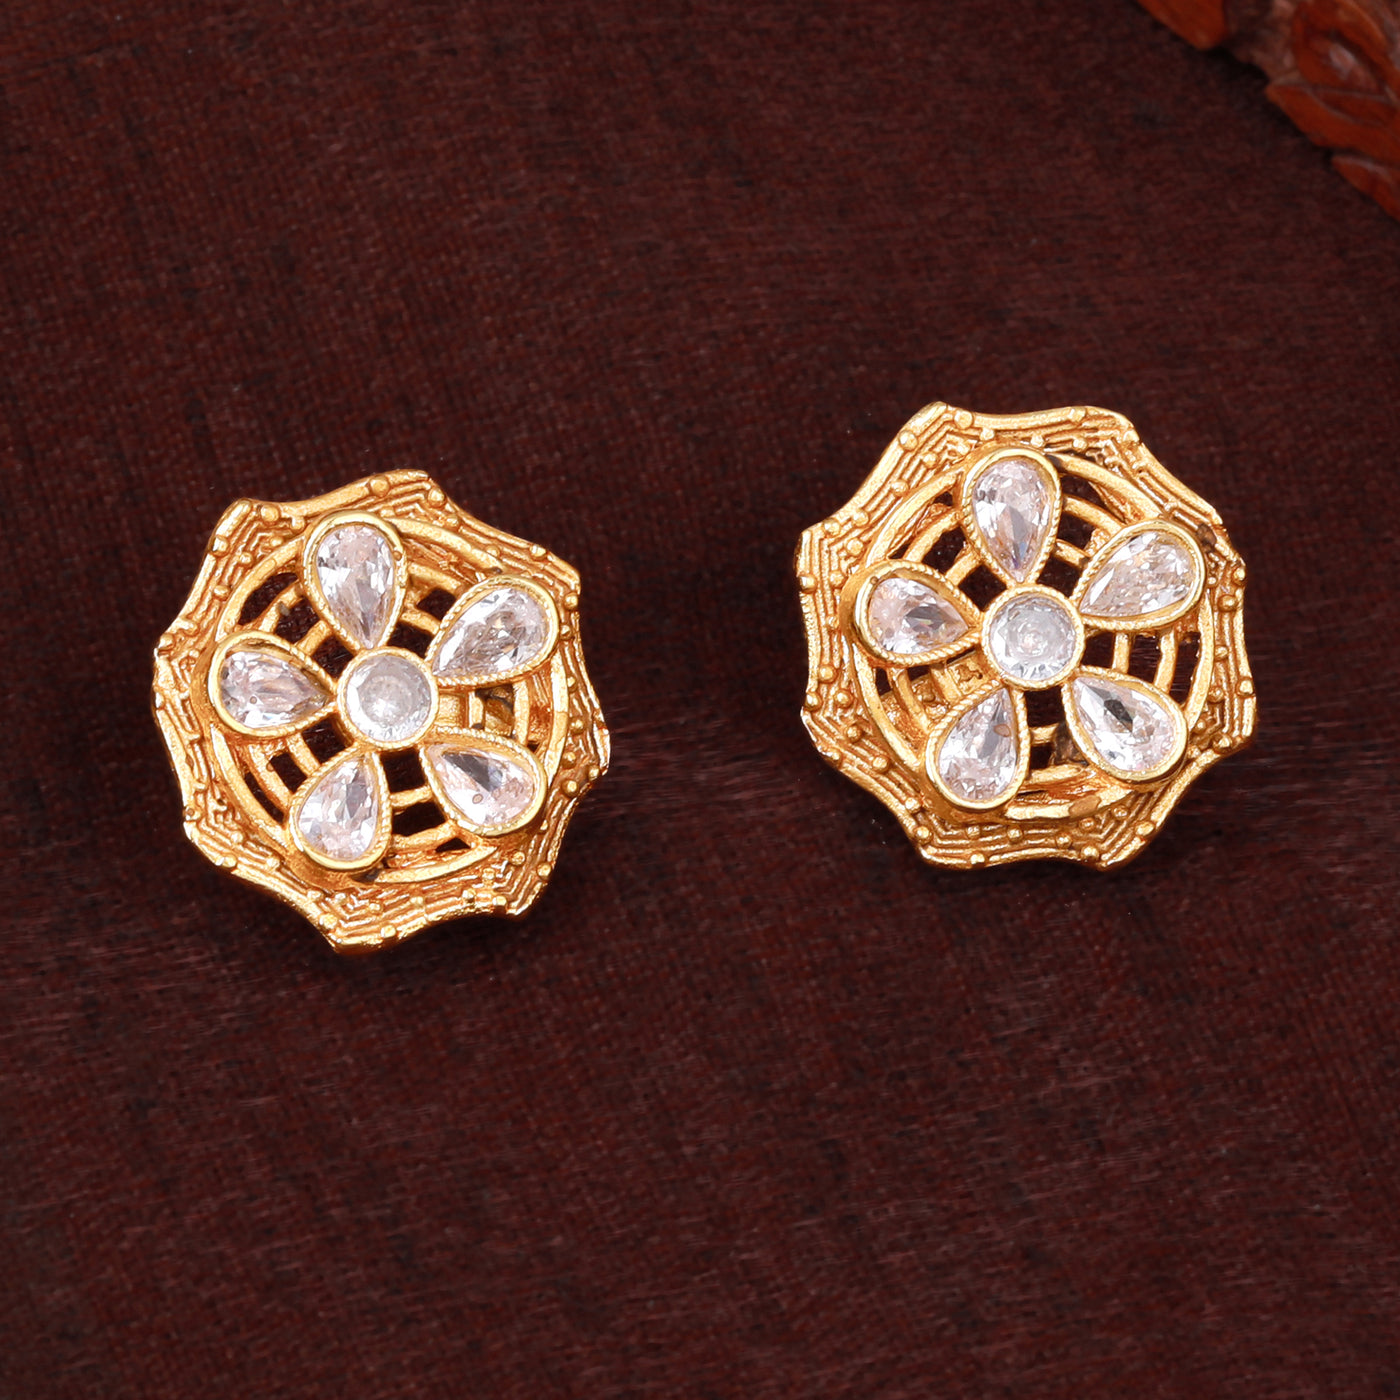 Estele Gold Plated Sparkling Flower Designer Matt Finish Stud Earrings with White Crystals for Women